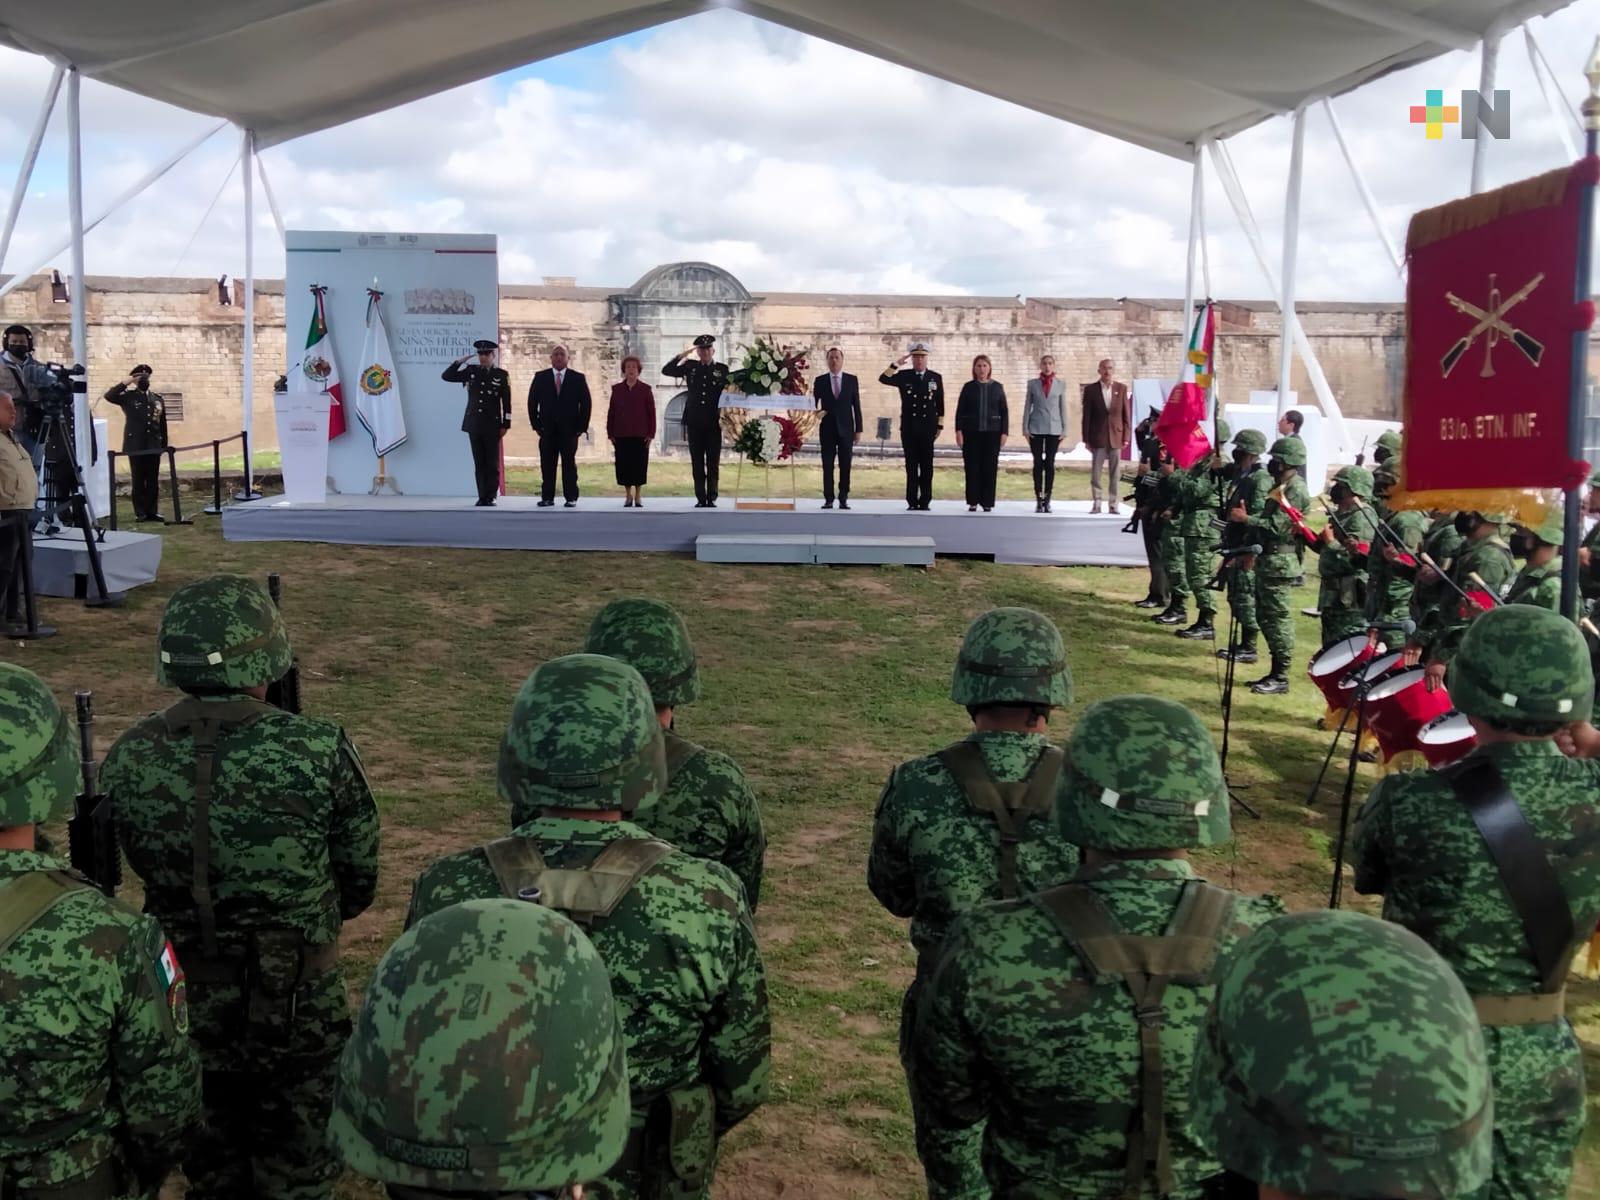 Encabeza Gobernador ceremonia conmemorativa a los Niños Héroes, en Perote